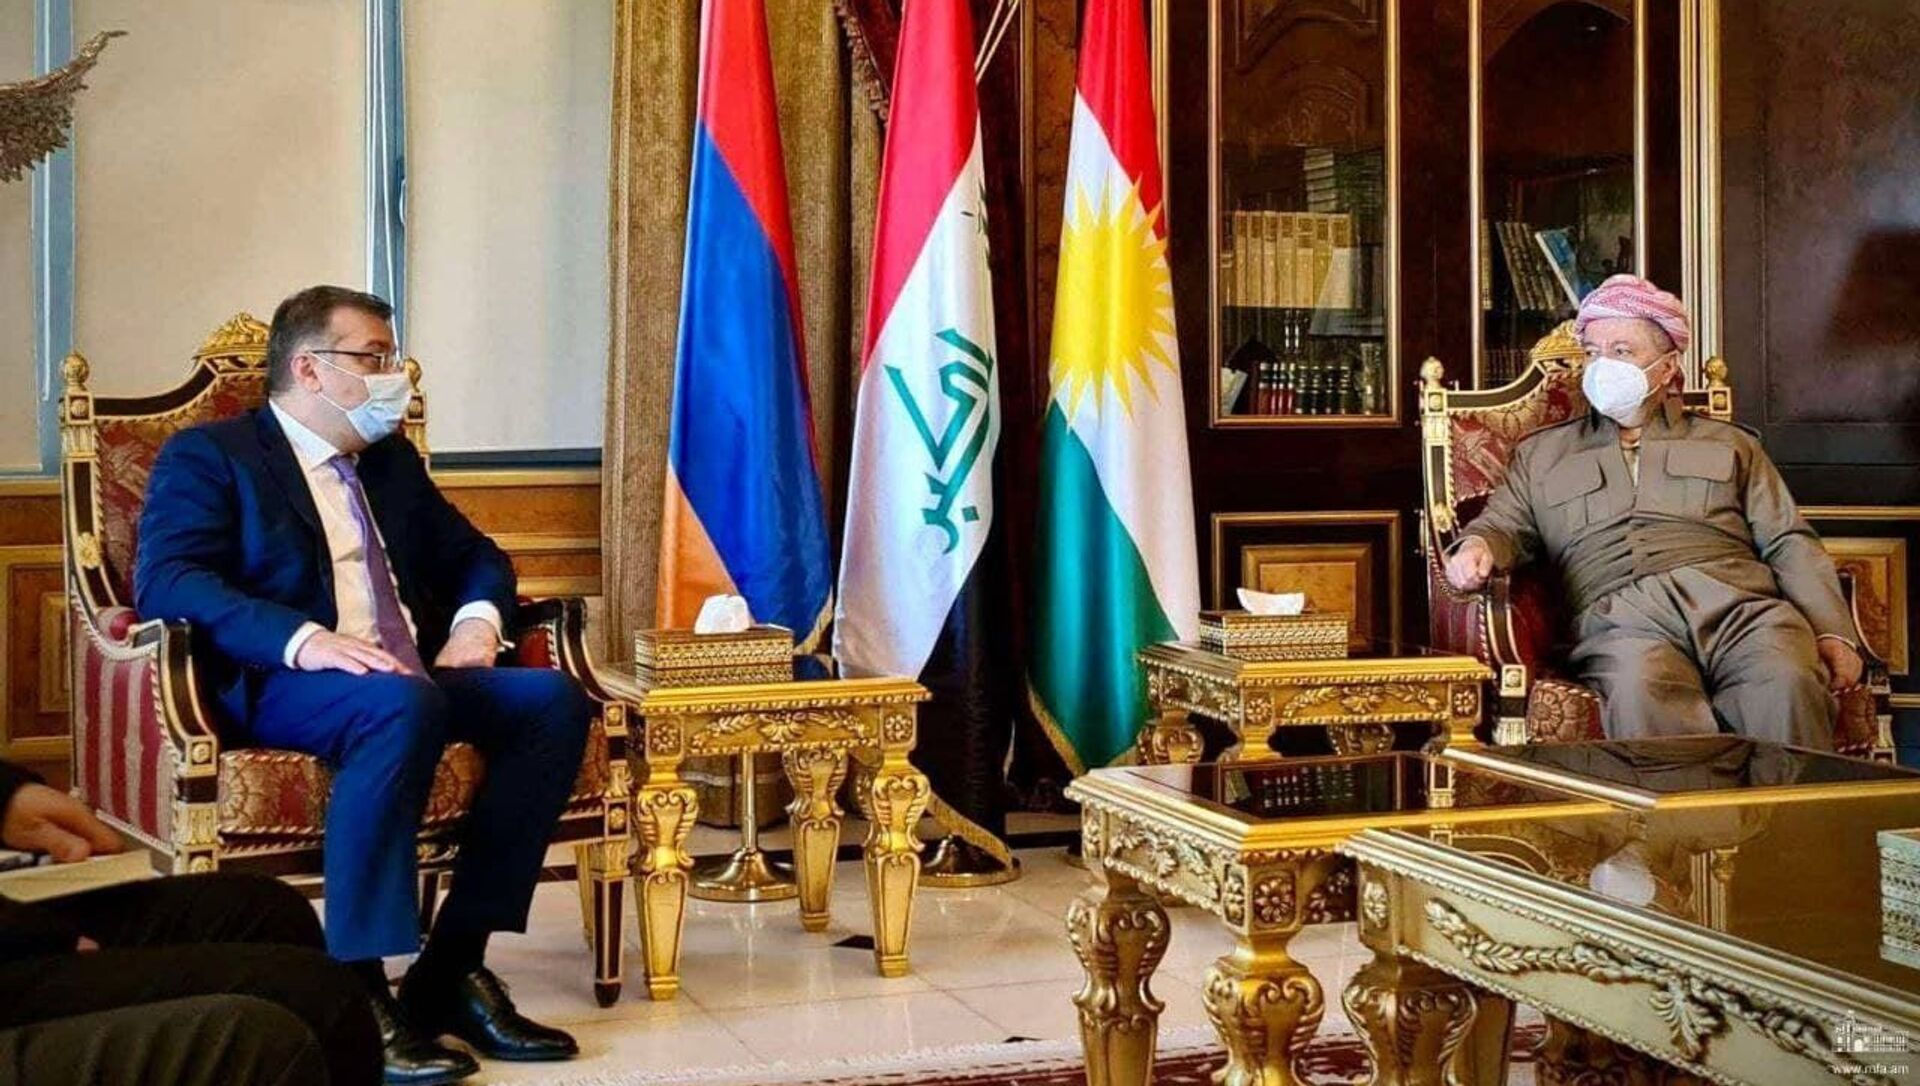 Заместитель министра иностранных дел Армении Артак Апитонян встретился с председателем Демократической партии Курдистана Масудом Барзани в Иракском Курдистане (24 февраля 2021). Ирак - Sputnik Армения, 1920, 24.02.2021